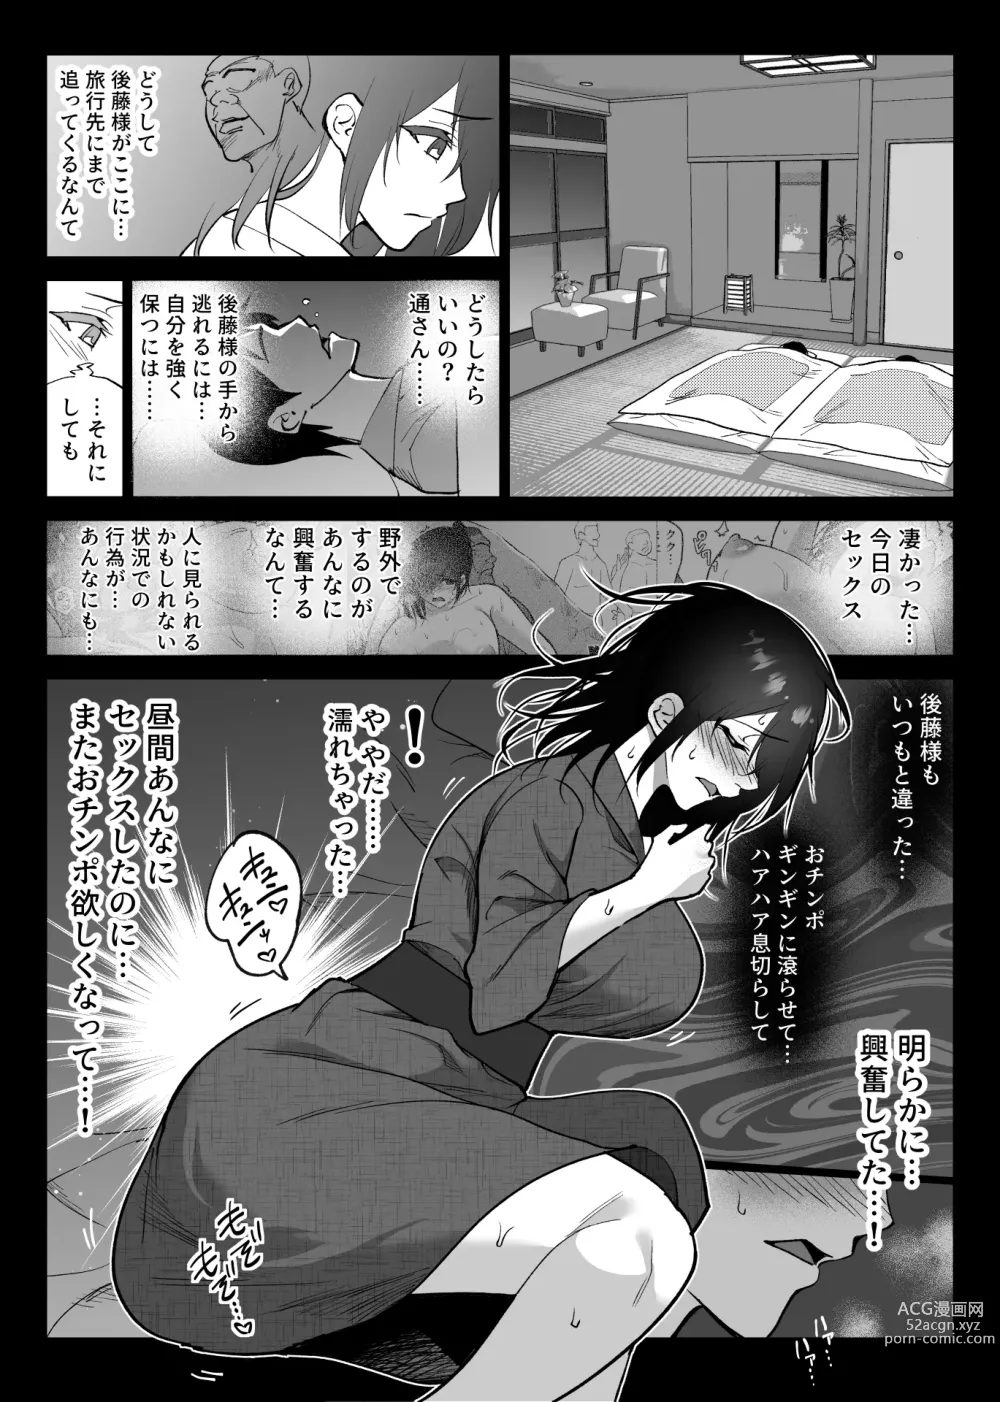 Page 7 of doujinshi Ochiru toki 3 -Ryokan no Kyakushitsu de Otto no Shuushin-Chuu Okonawareru Tanin Koubi-